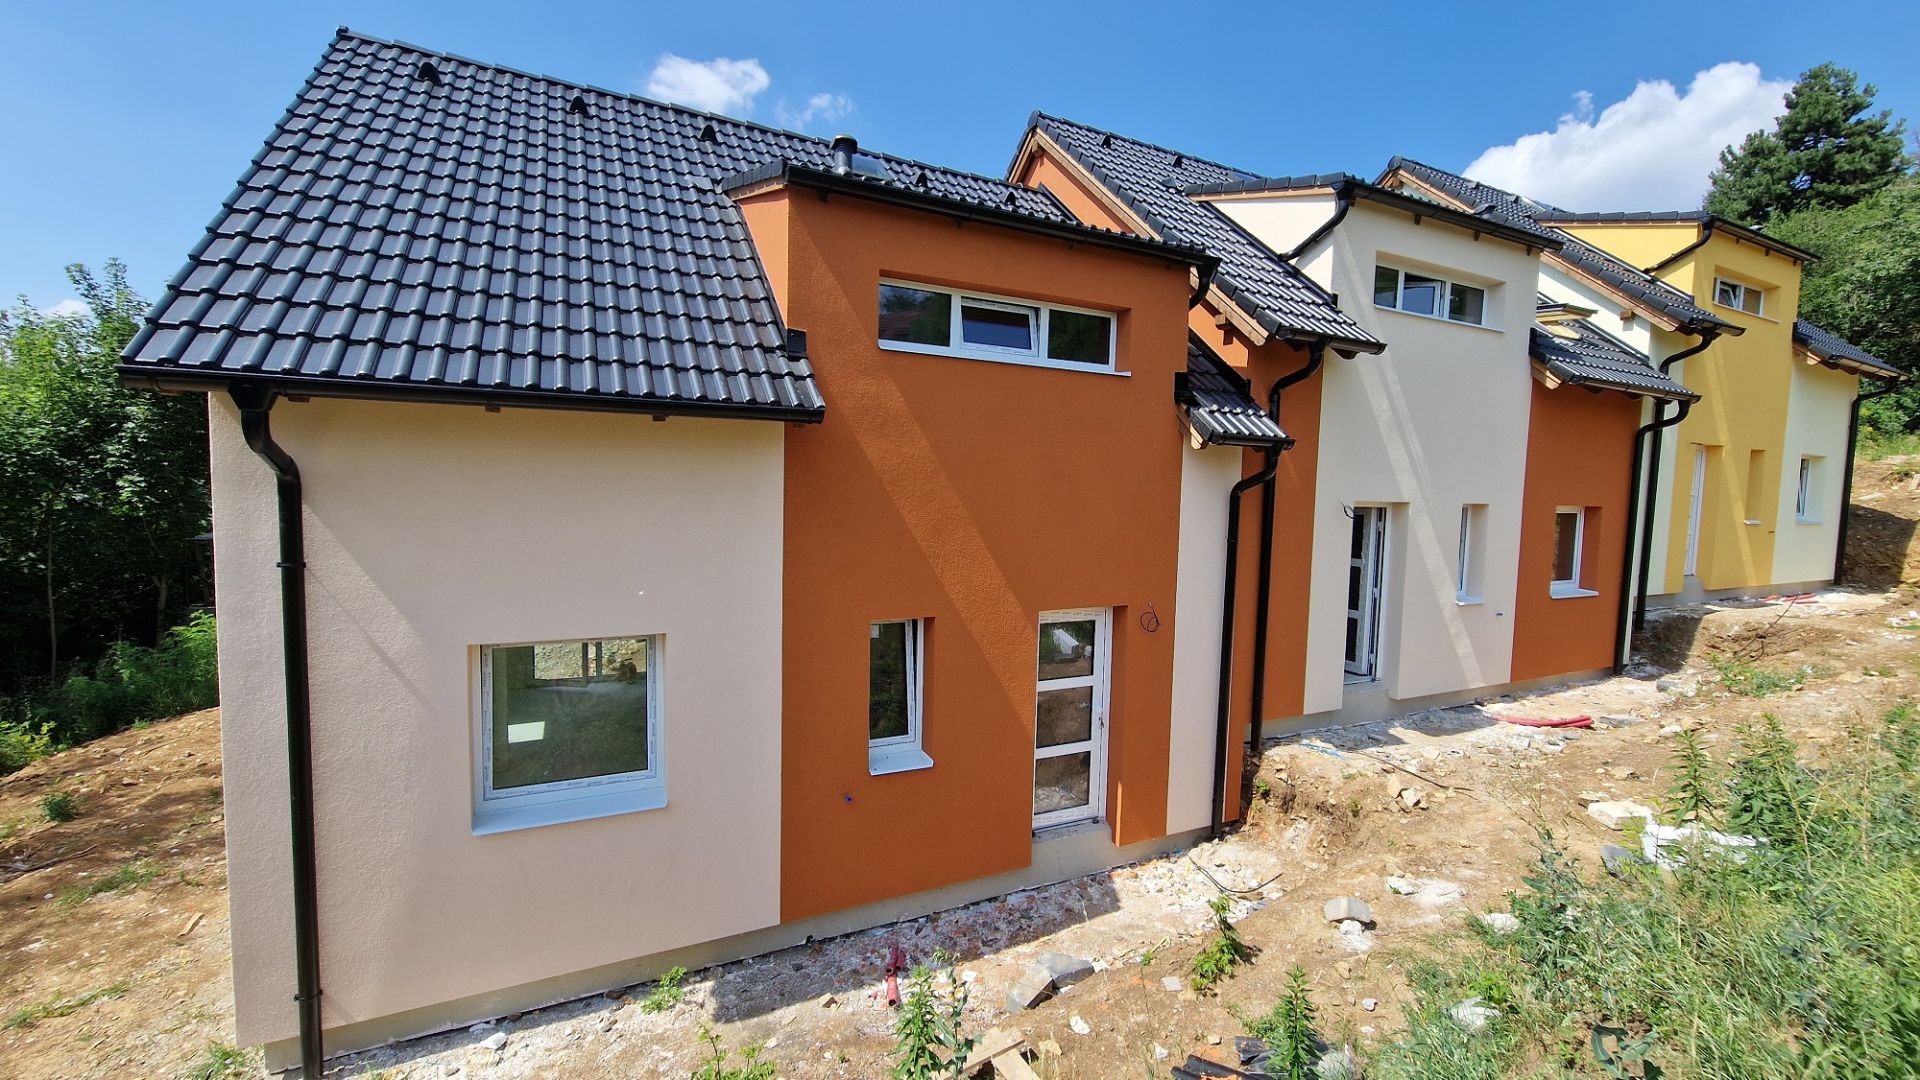 Novostavba nízkoenergetického rodinného domu - bytové jednotky v lokalitě Libčice nad Vltavou - Chýnov.